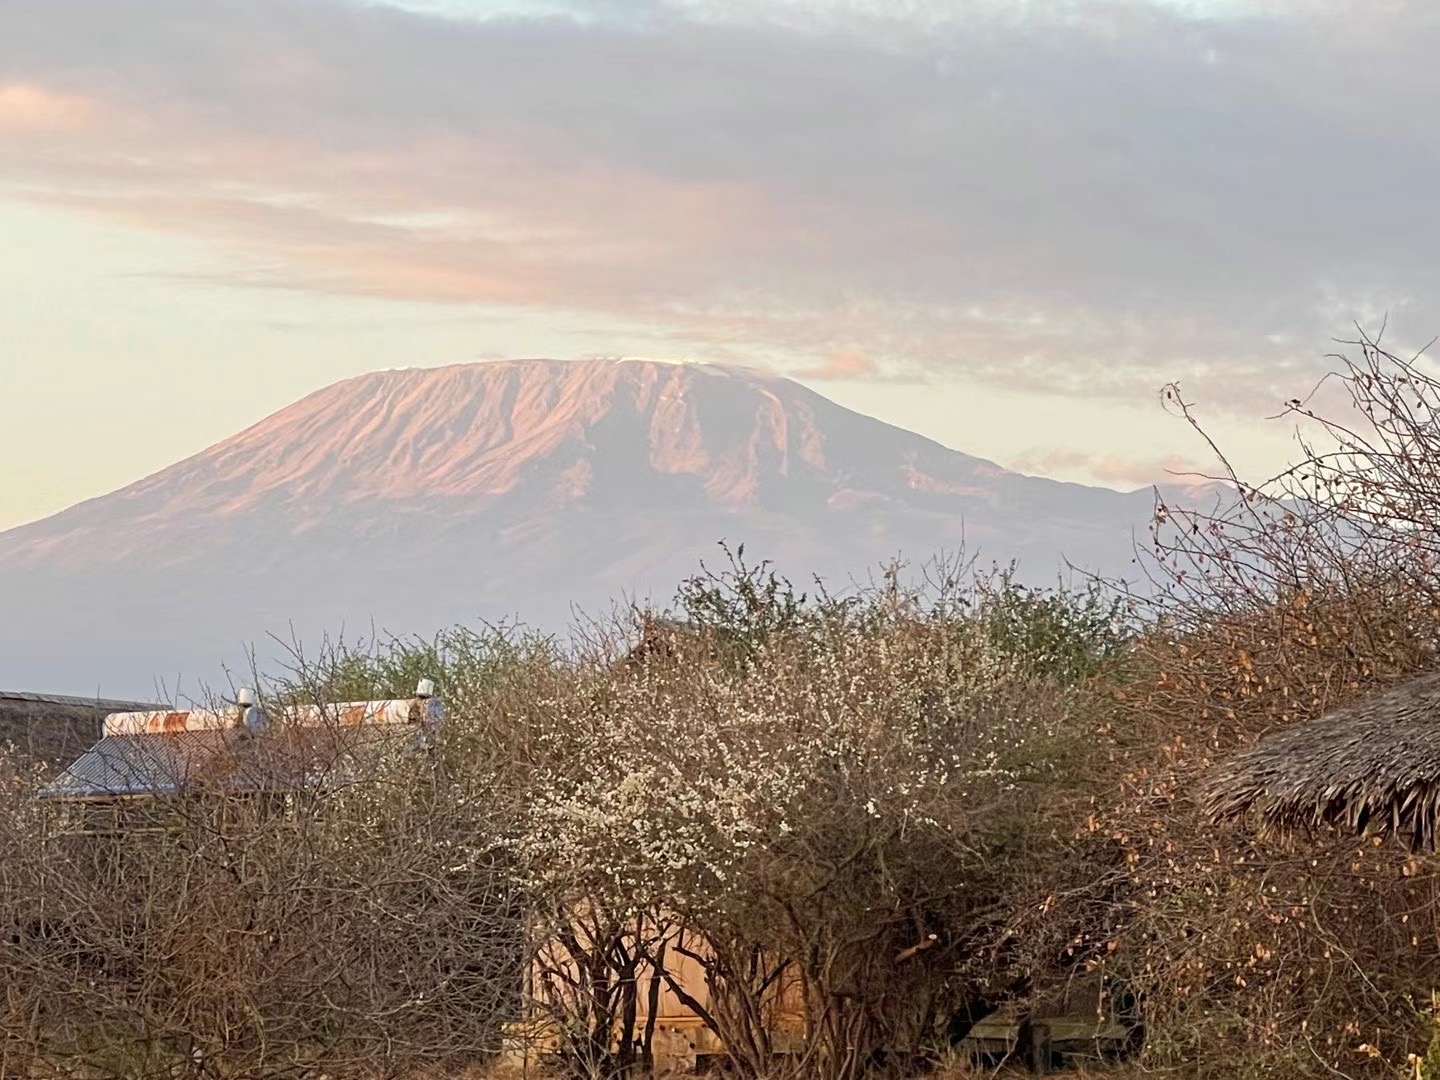 乞力马扎罗山，许多地理学家称它为“非洲之王”。该山的主体以典型火山曲线向下面的平原倾斜，平原的高度约